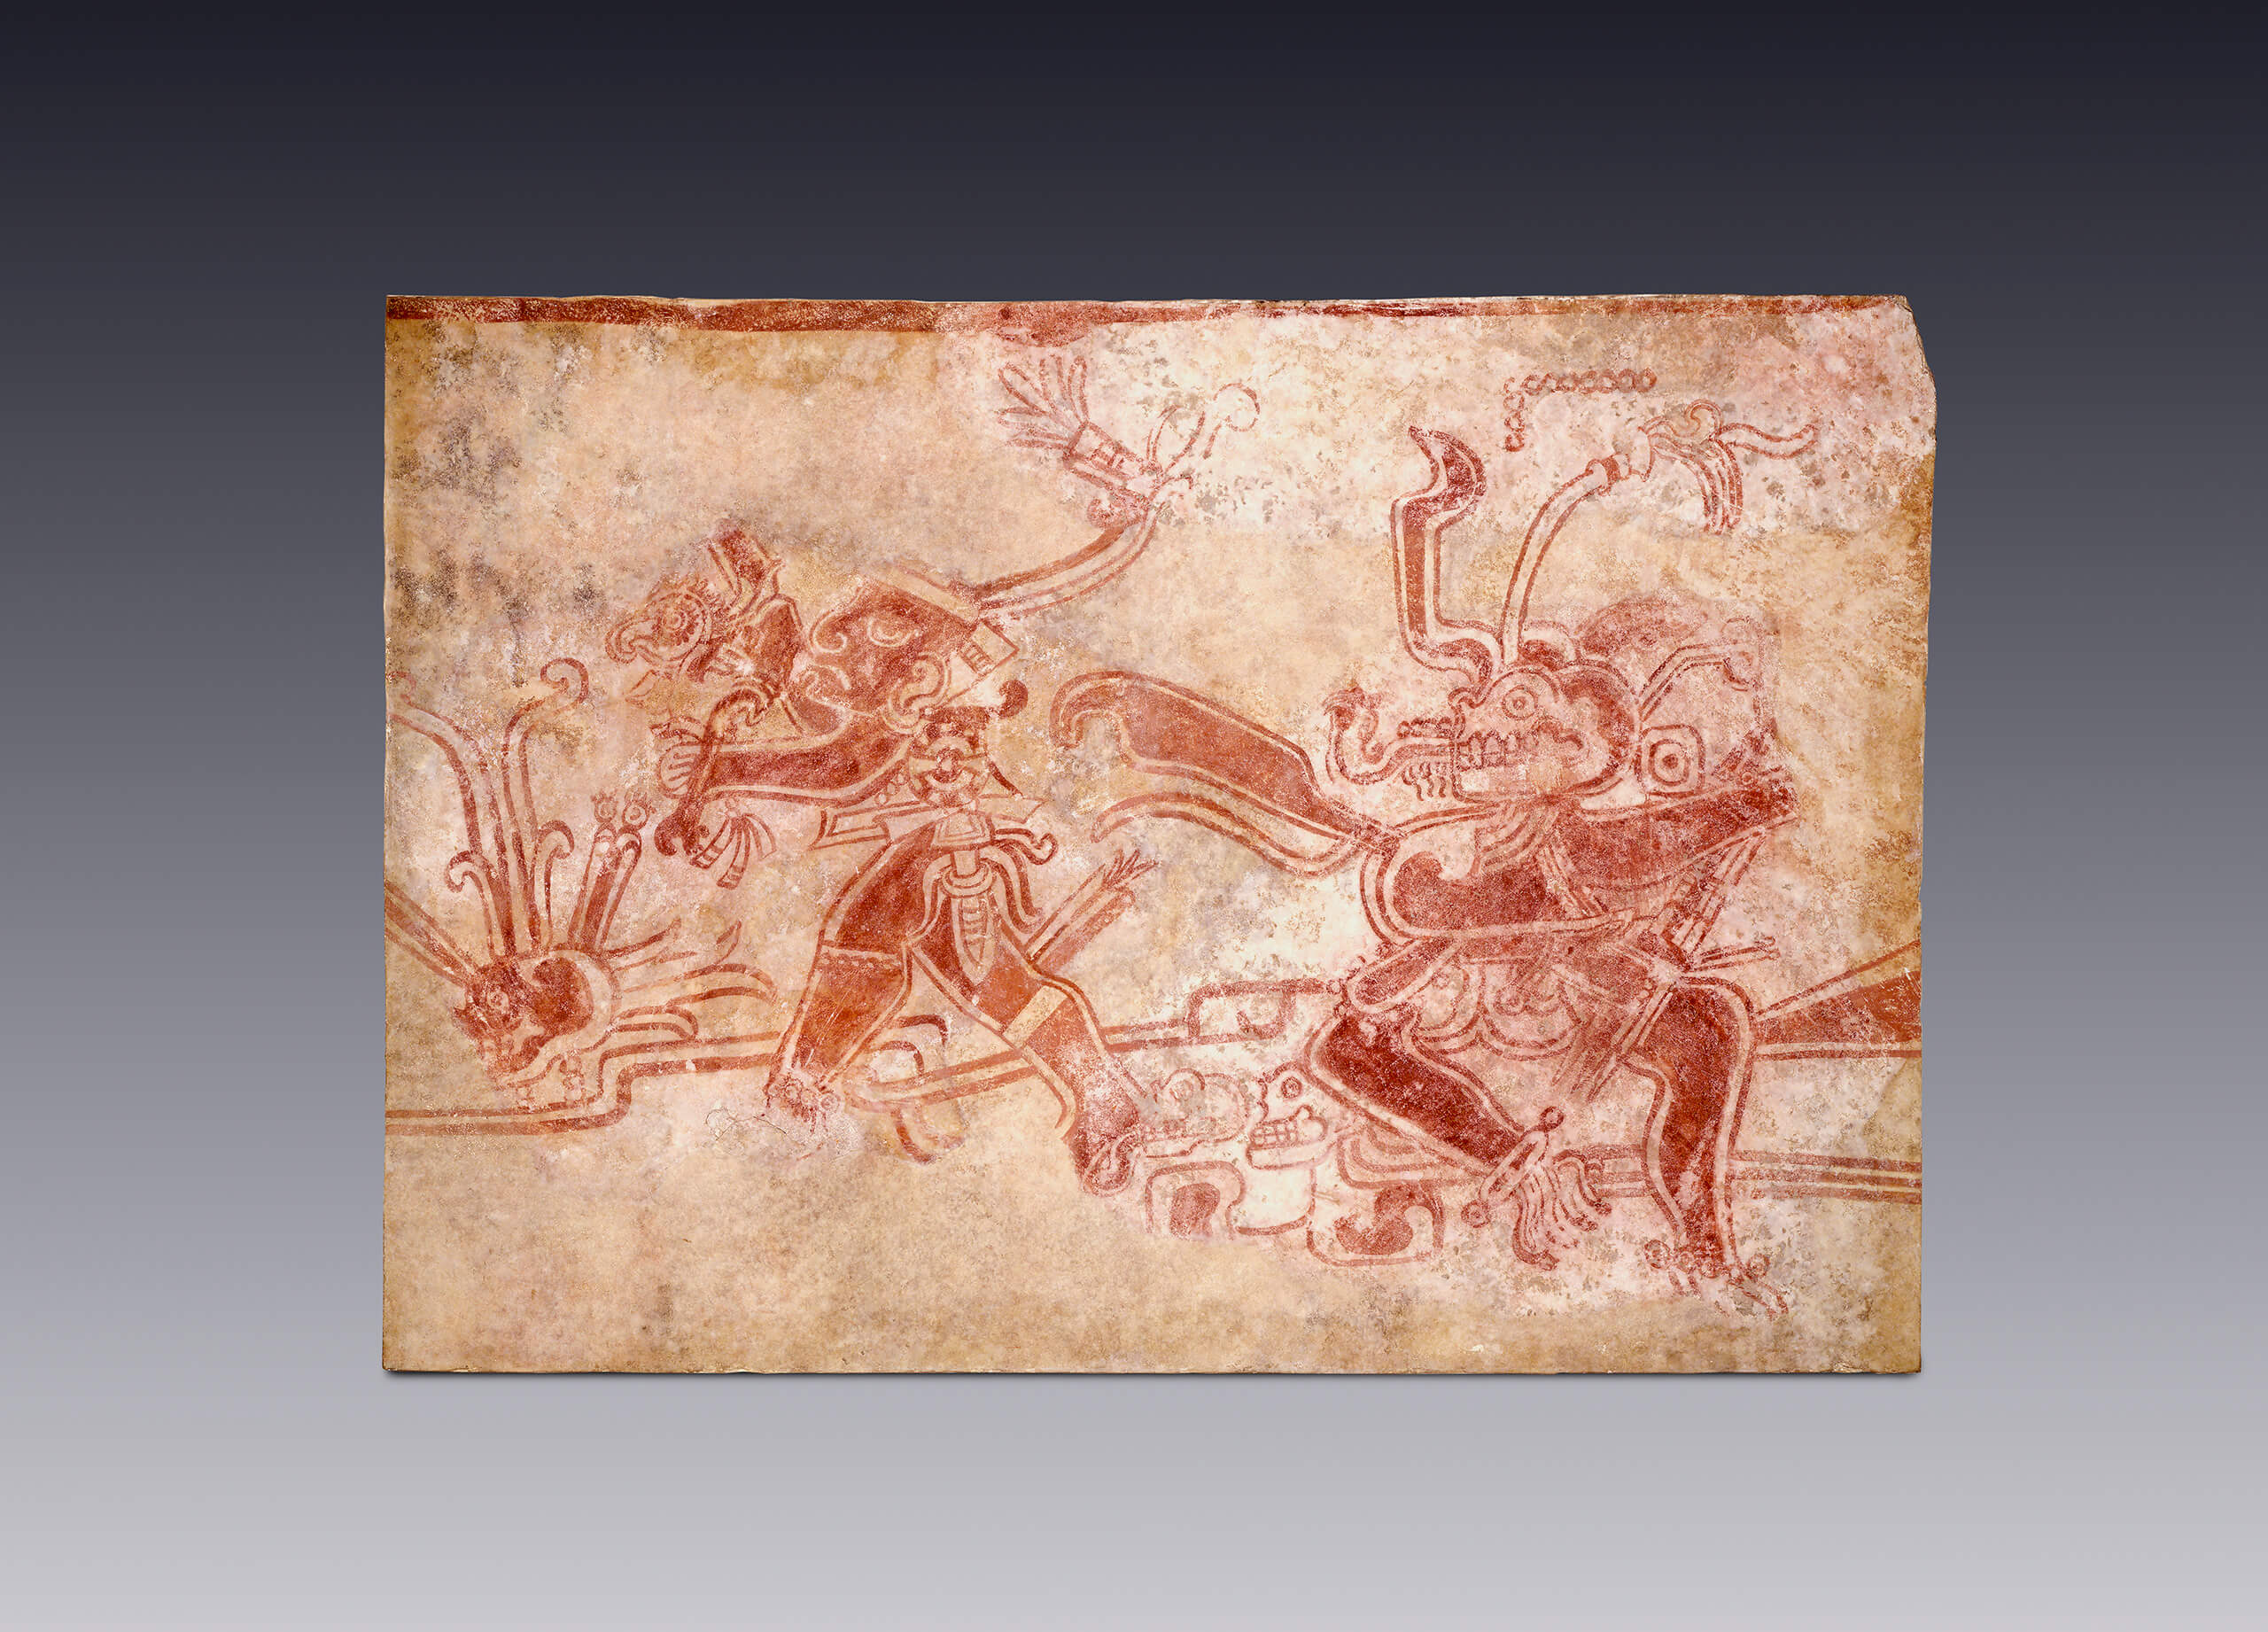 Fragmento de pintura mural con escena alusiva a la muerte y el sacrificio | El México antiguo. Salas de Arte Prehispánico | Museo Amparo, Puebla